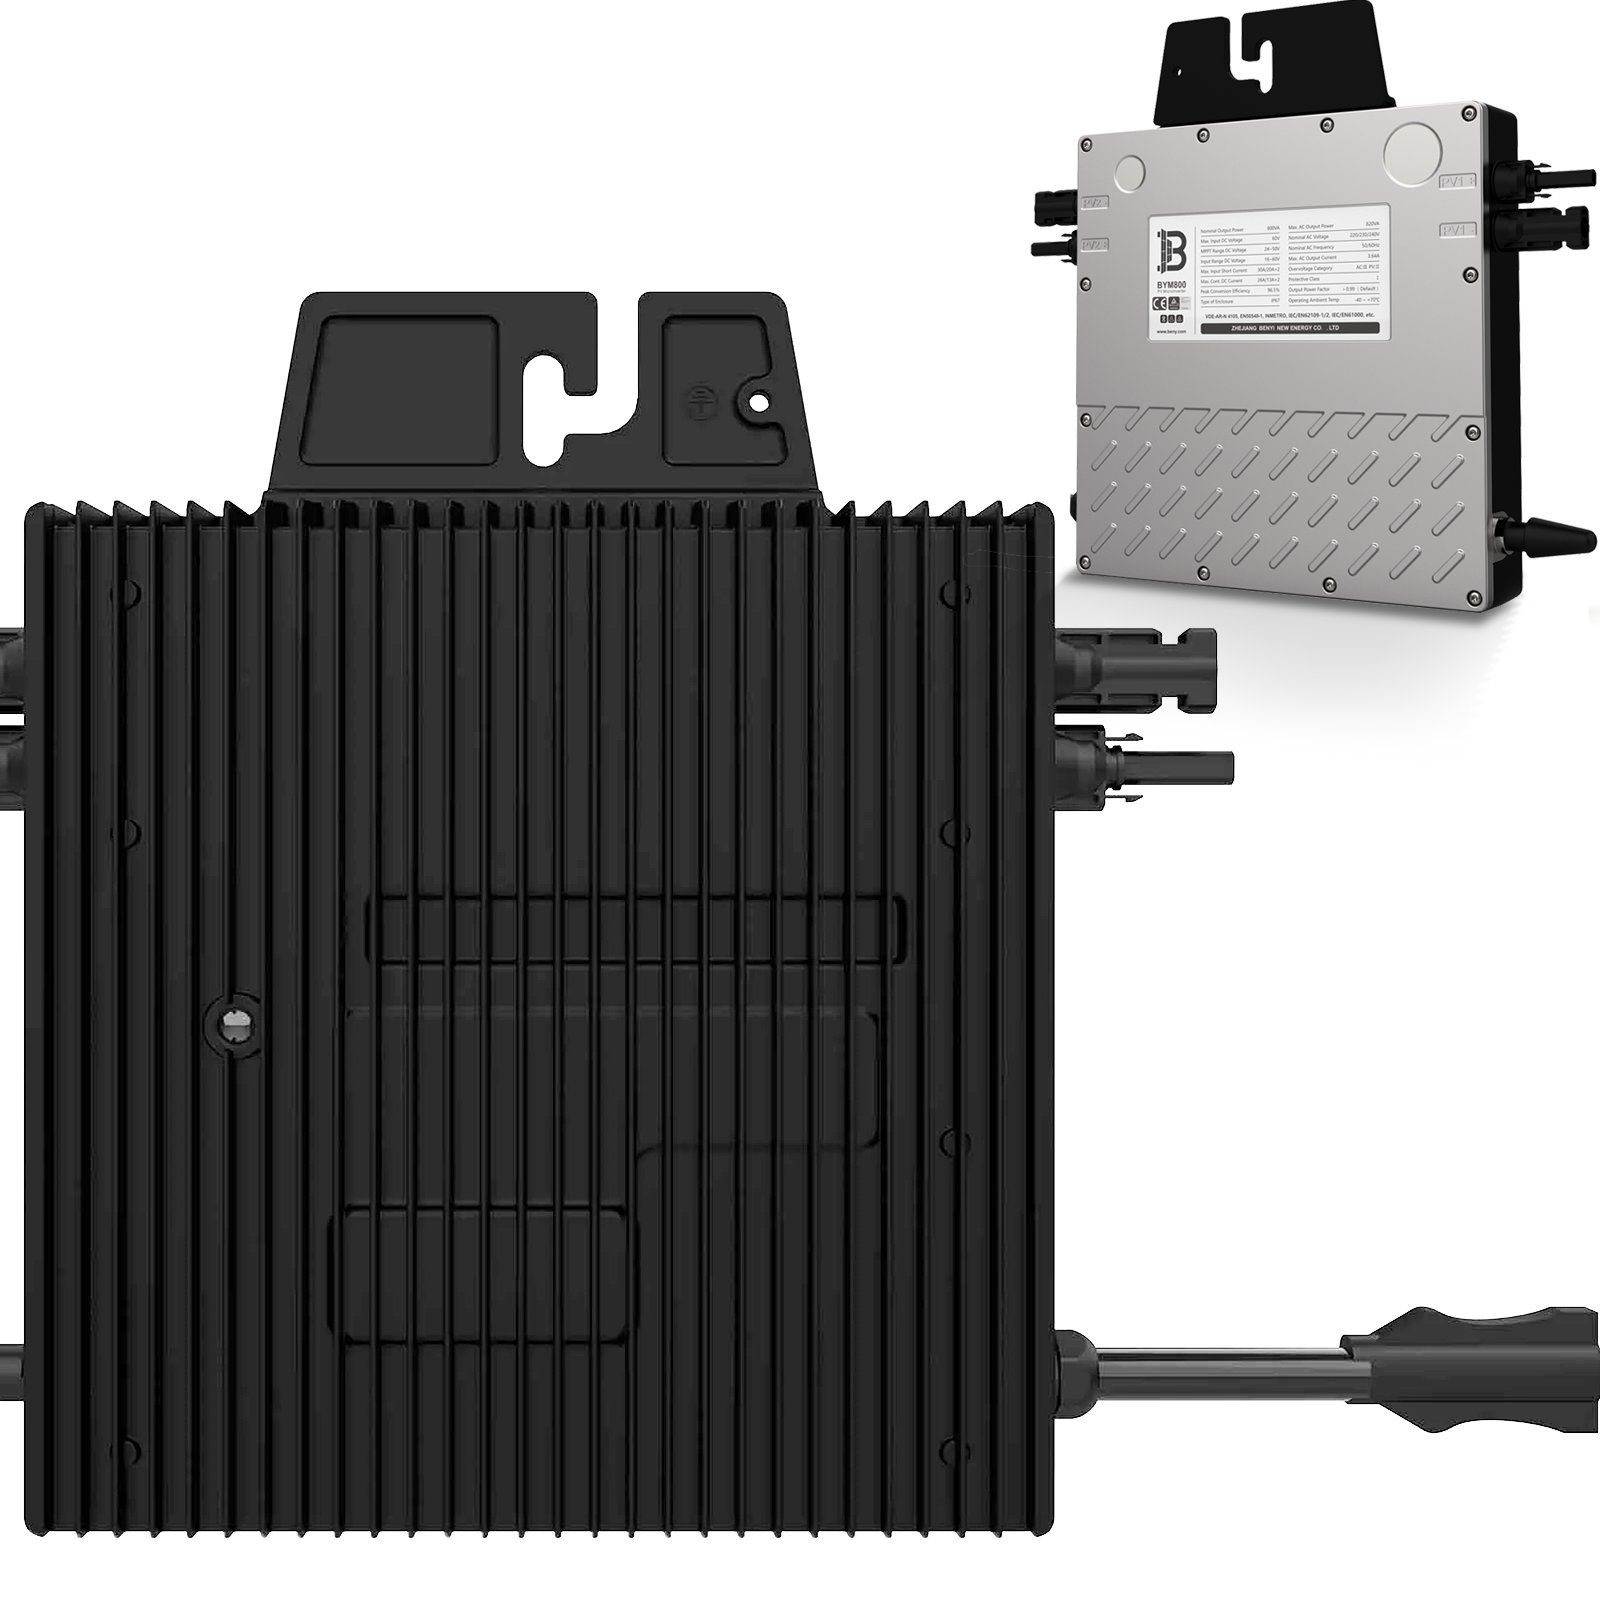 VENDOMNIA Wechselrichter BENY 800 W Micro-Wechselrichter Drosselbar für Solarmodule, (BYM800, Mikrowechselrichter, Solar), Microinverter Inverter für Mini-PV Plug & Play Balkonkraftwerk